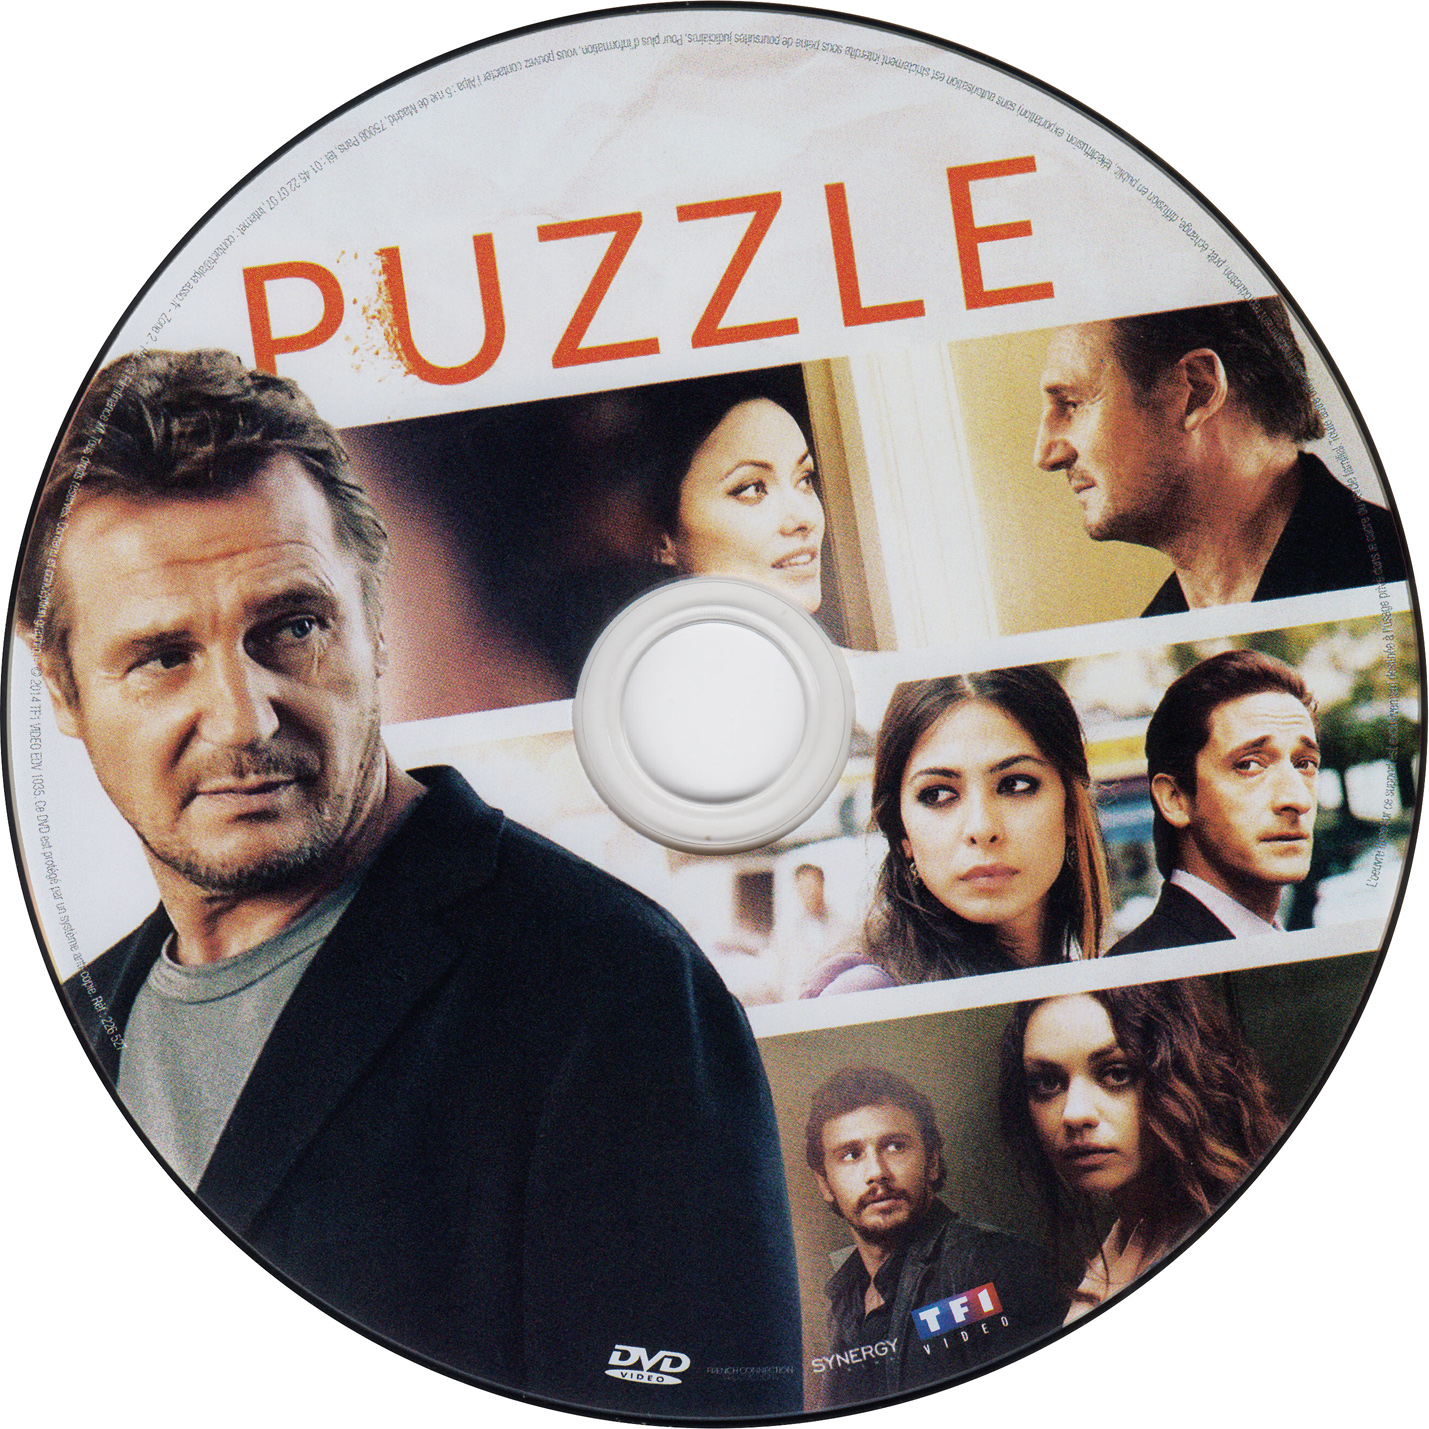 Puzzle (2014)